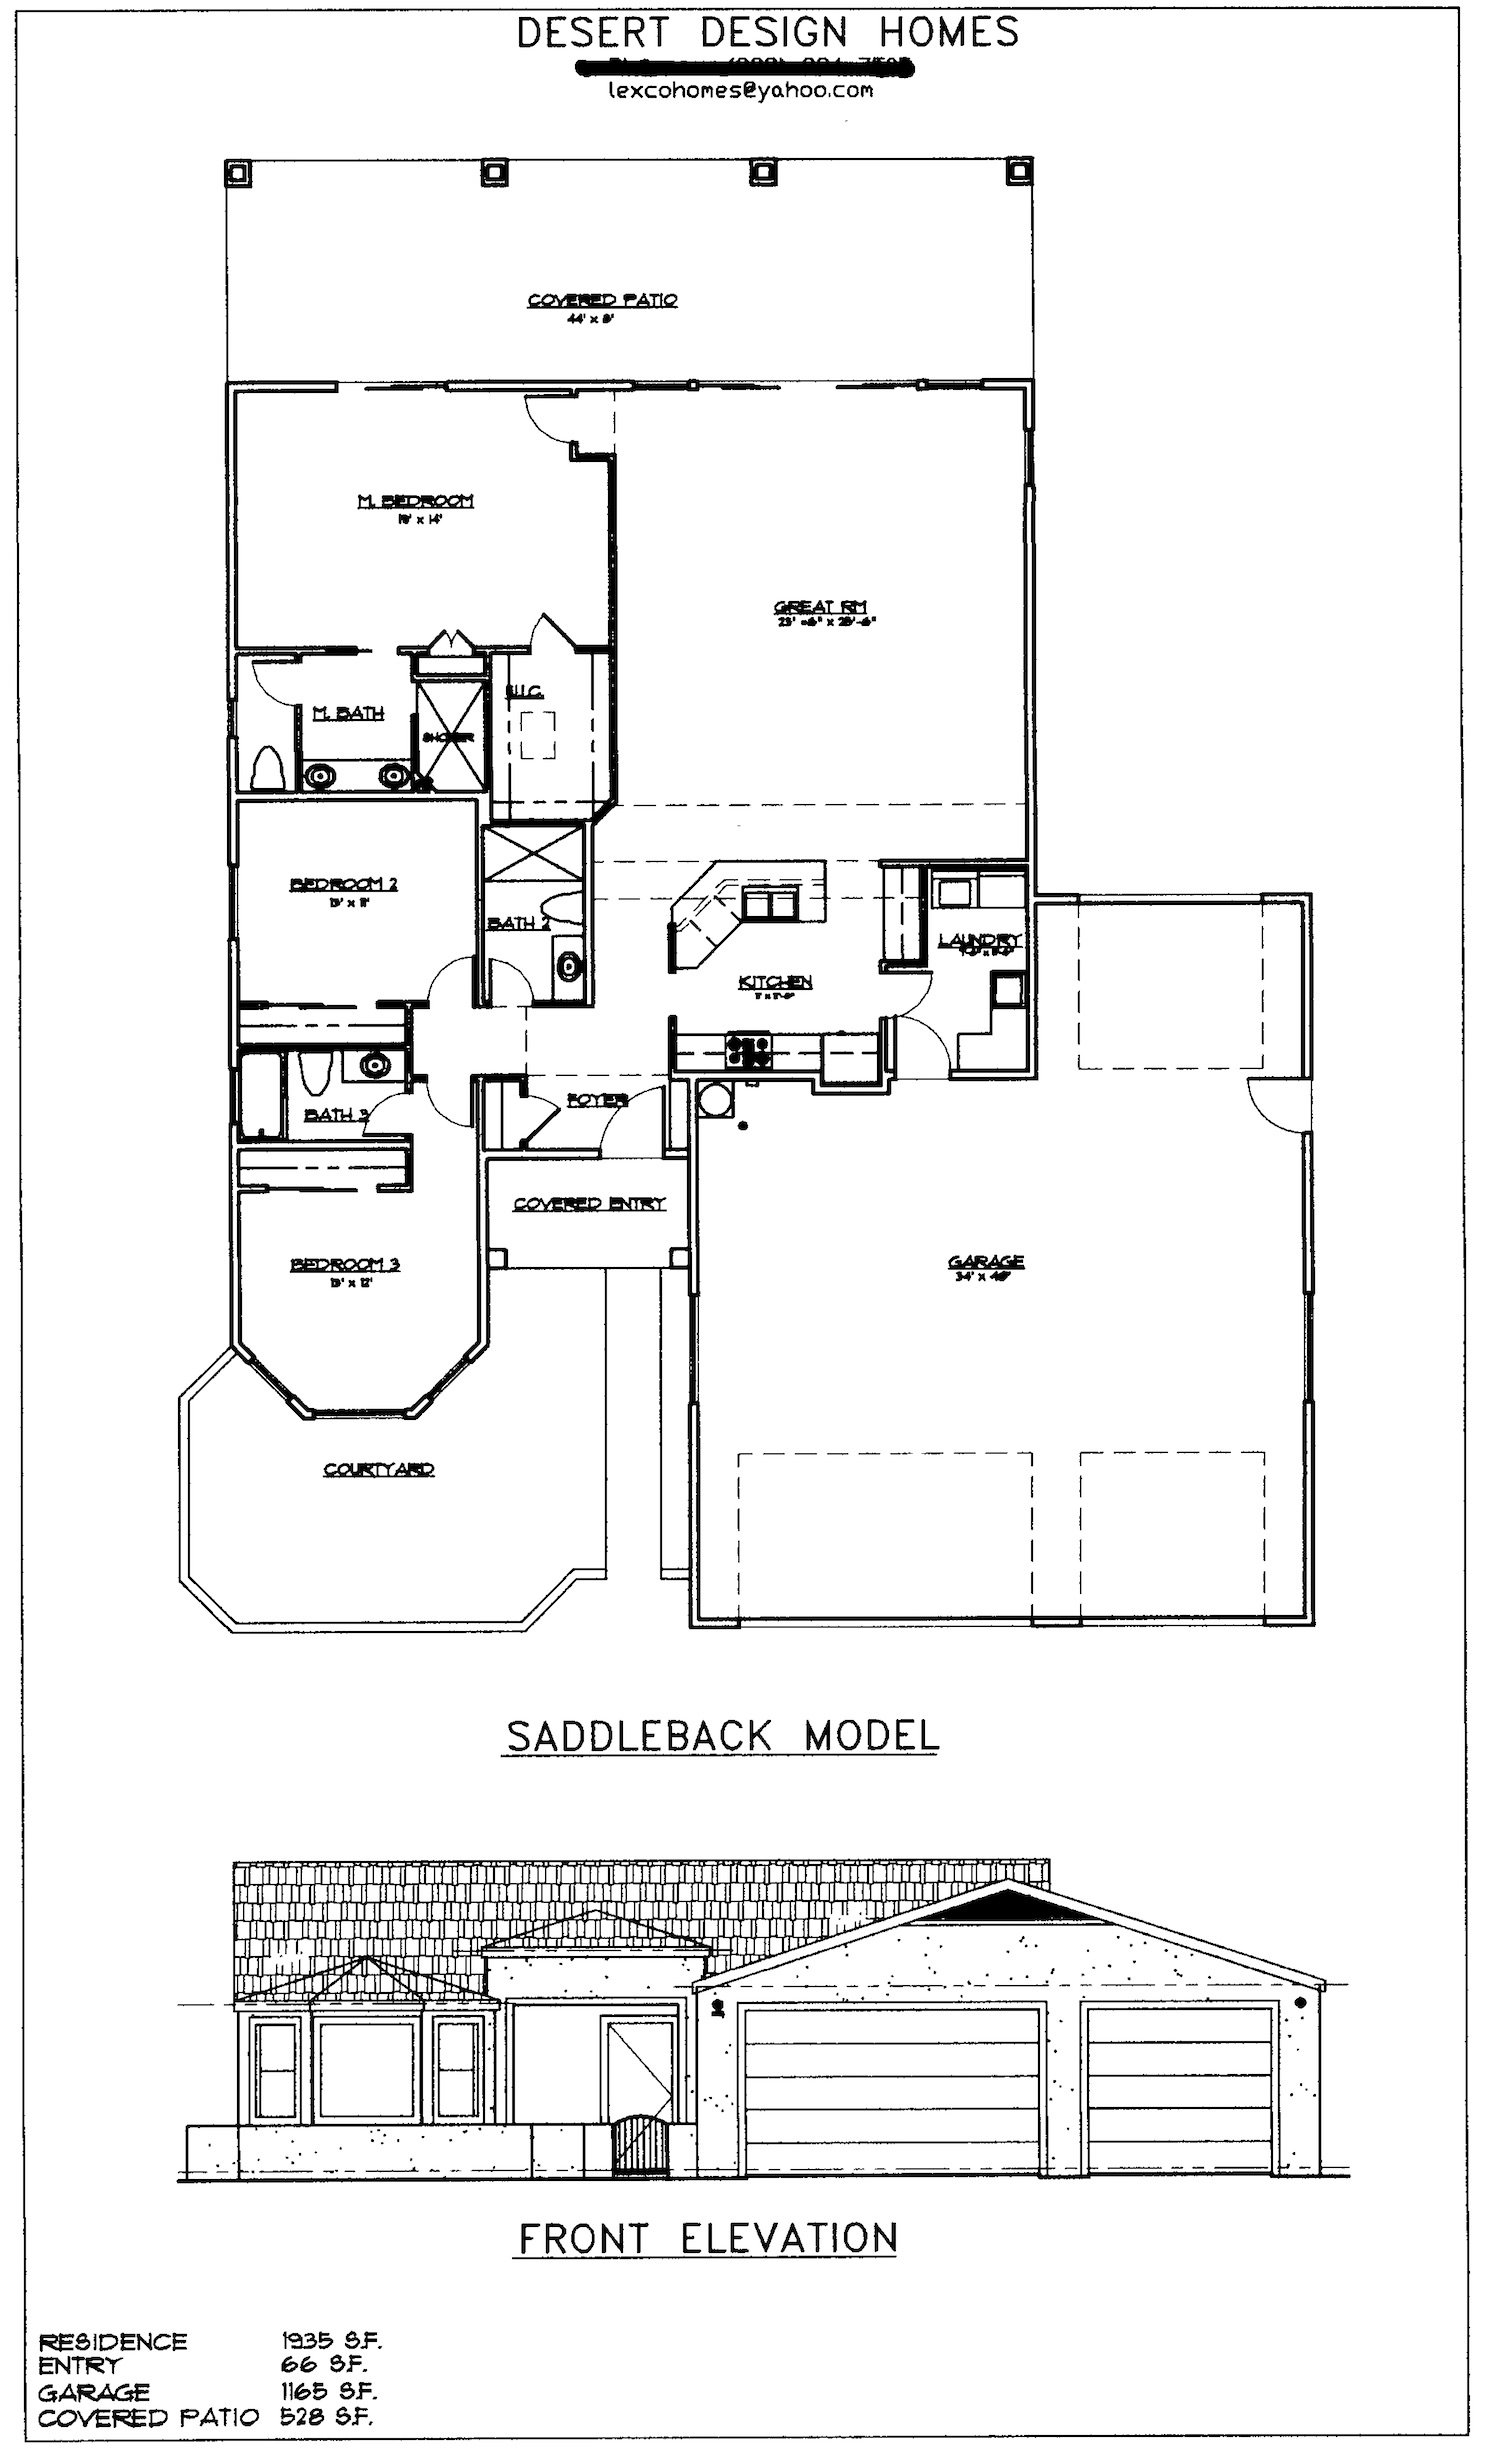 desert designed homes - saddleback